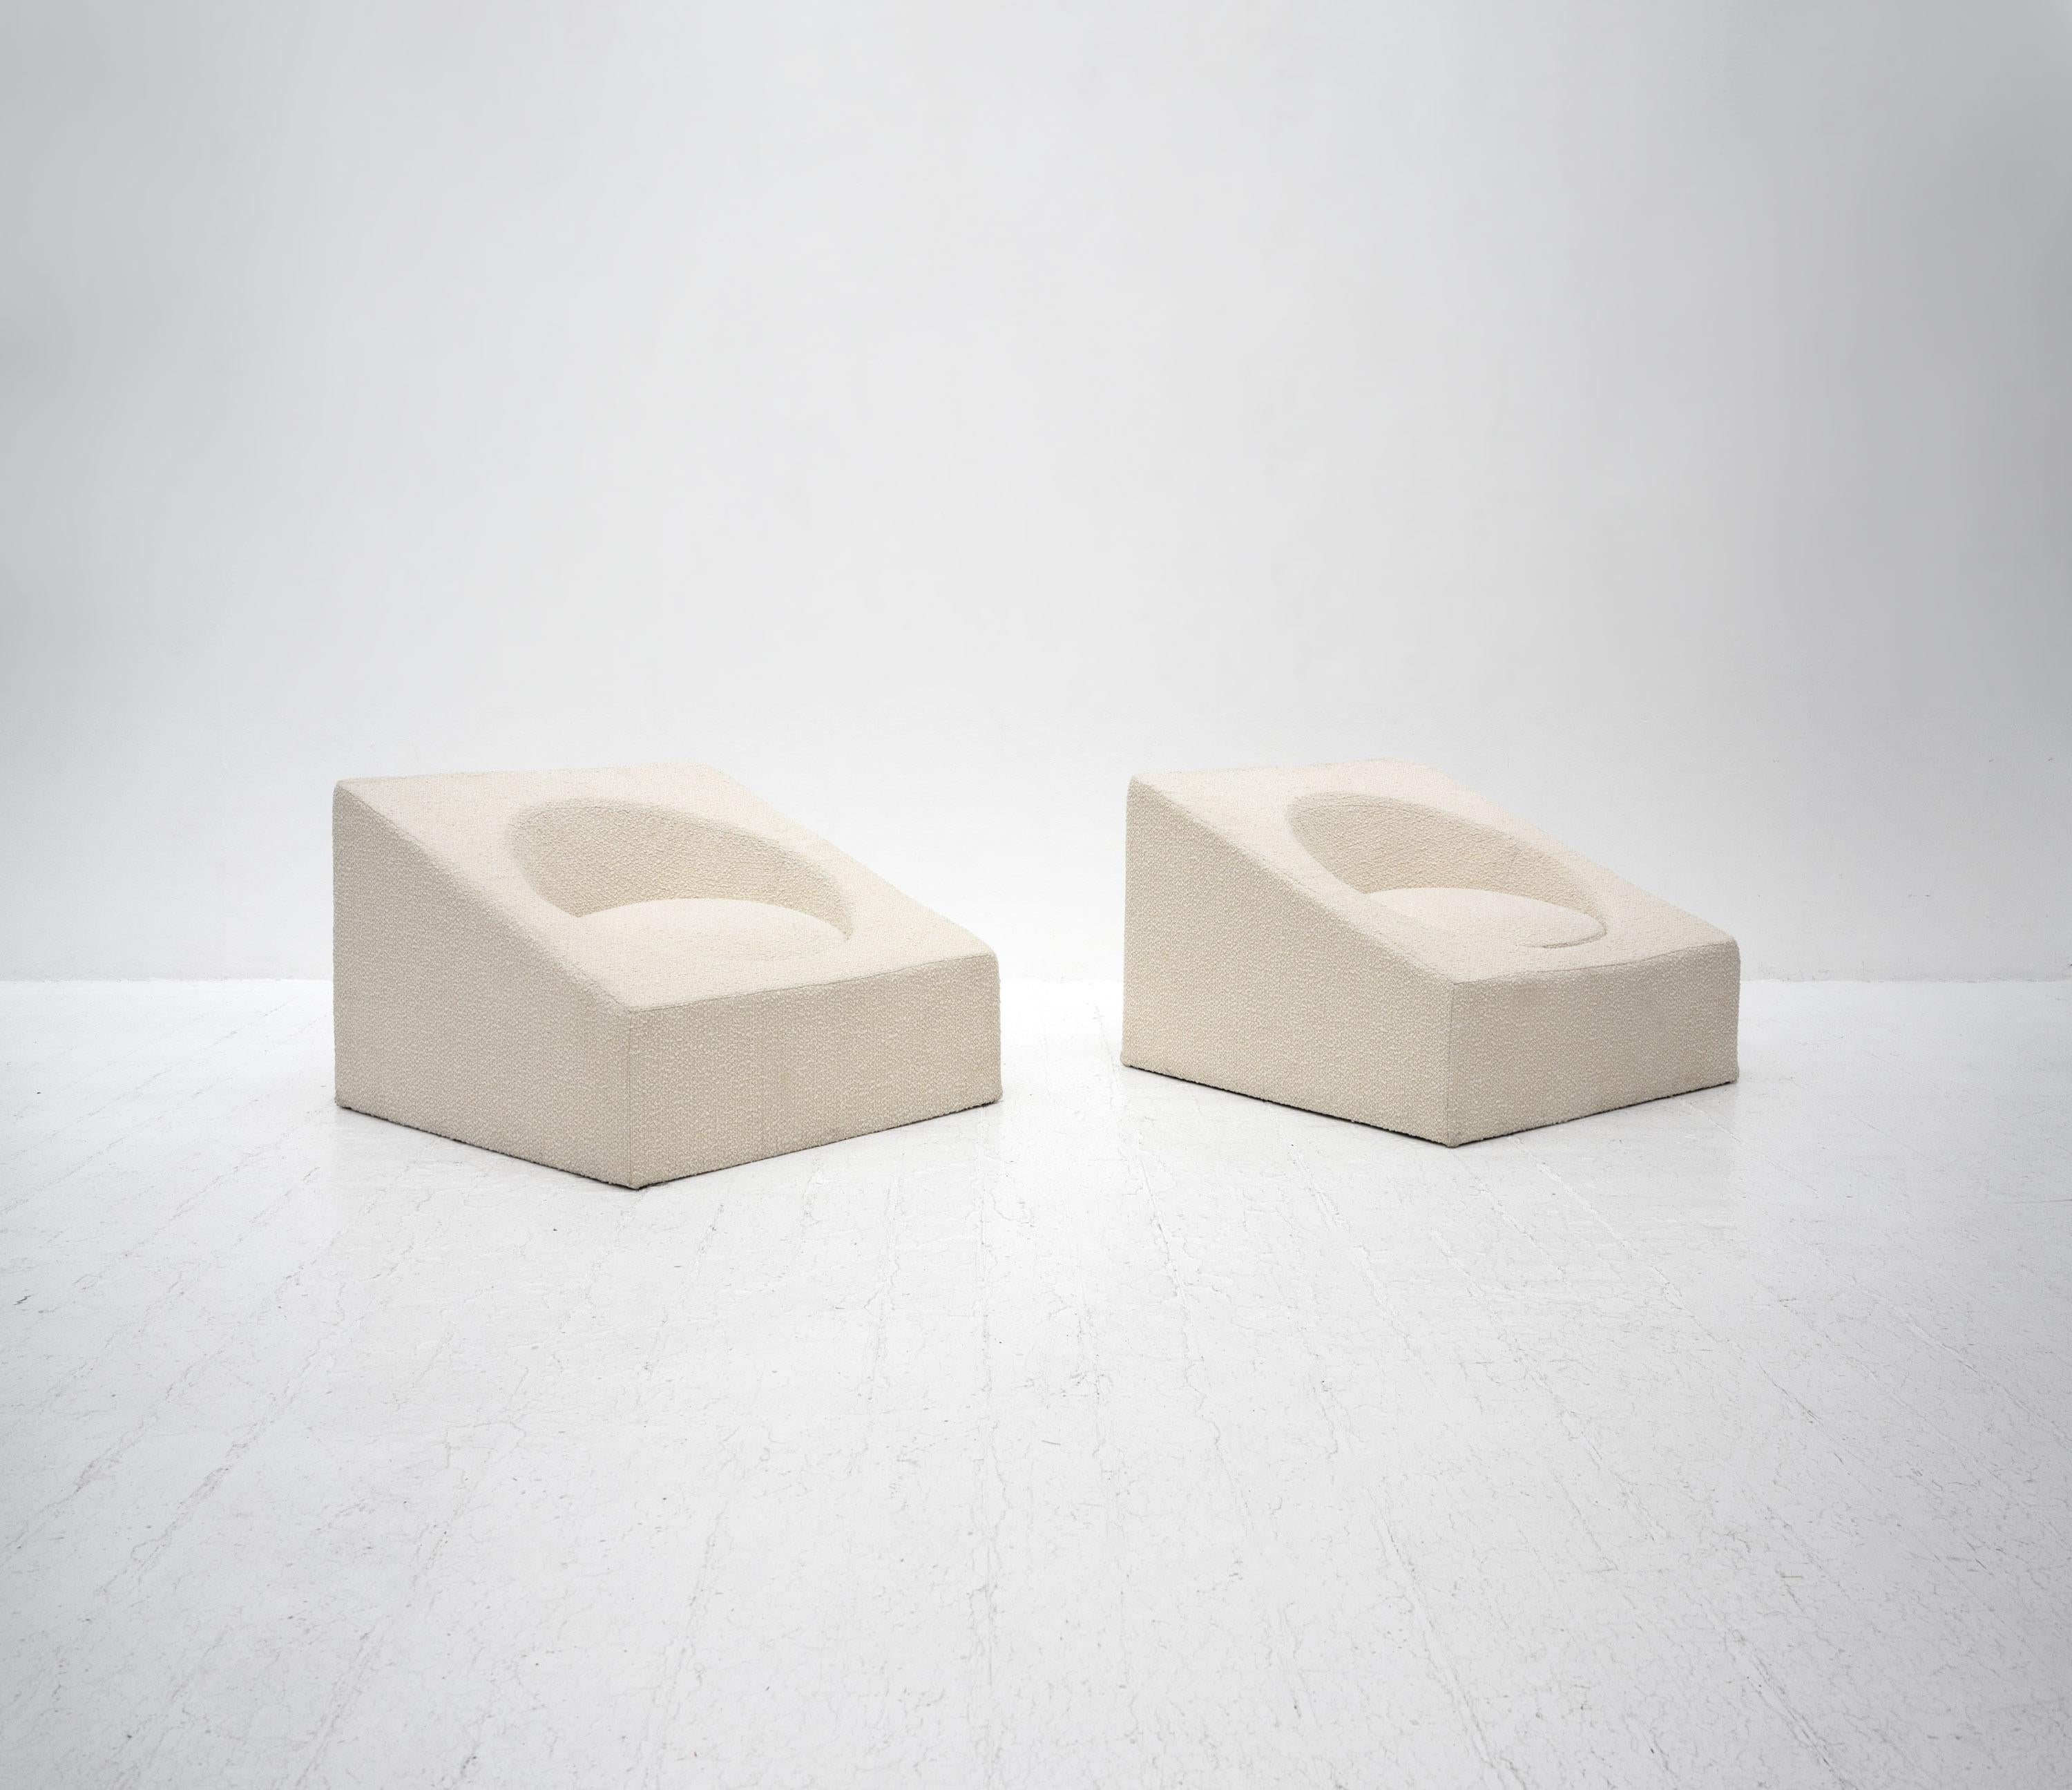 Chaises de salon italiennes de la fin du 20e siècle, composées de mousse sculptée sur une base en bois, tapissées d'un tissu bouclé blanc cassé. Les chaises sont très confortables. 

Il y a deux chaises disponibles, le prix est par chaise.